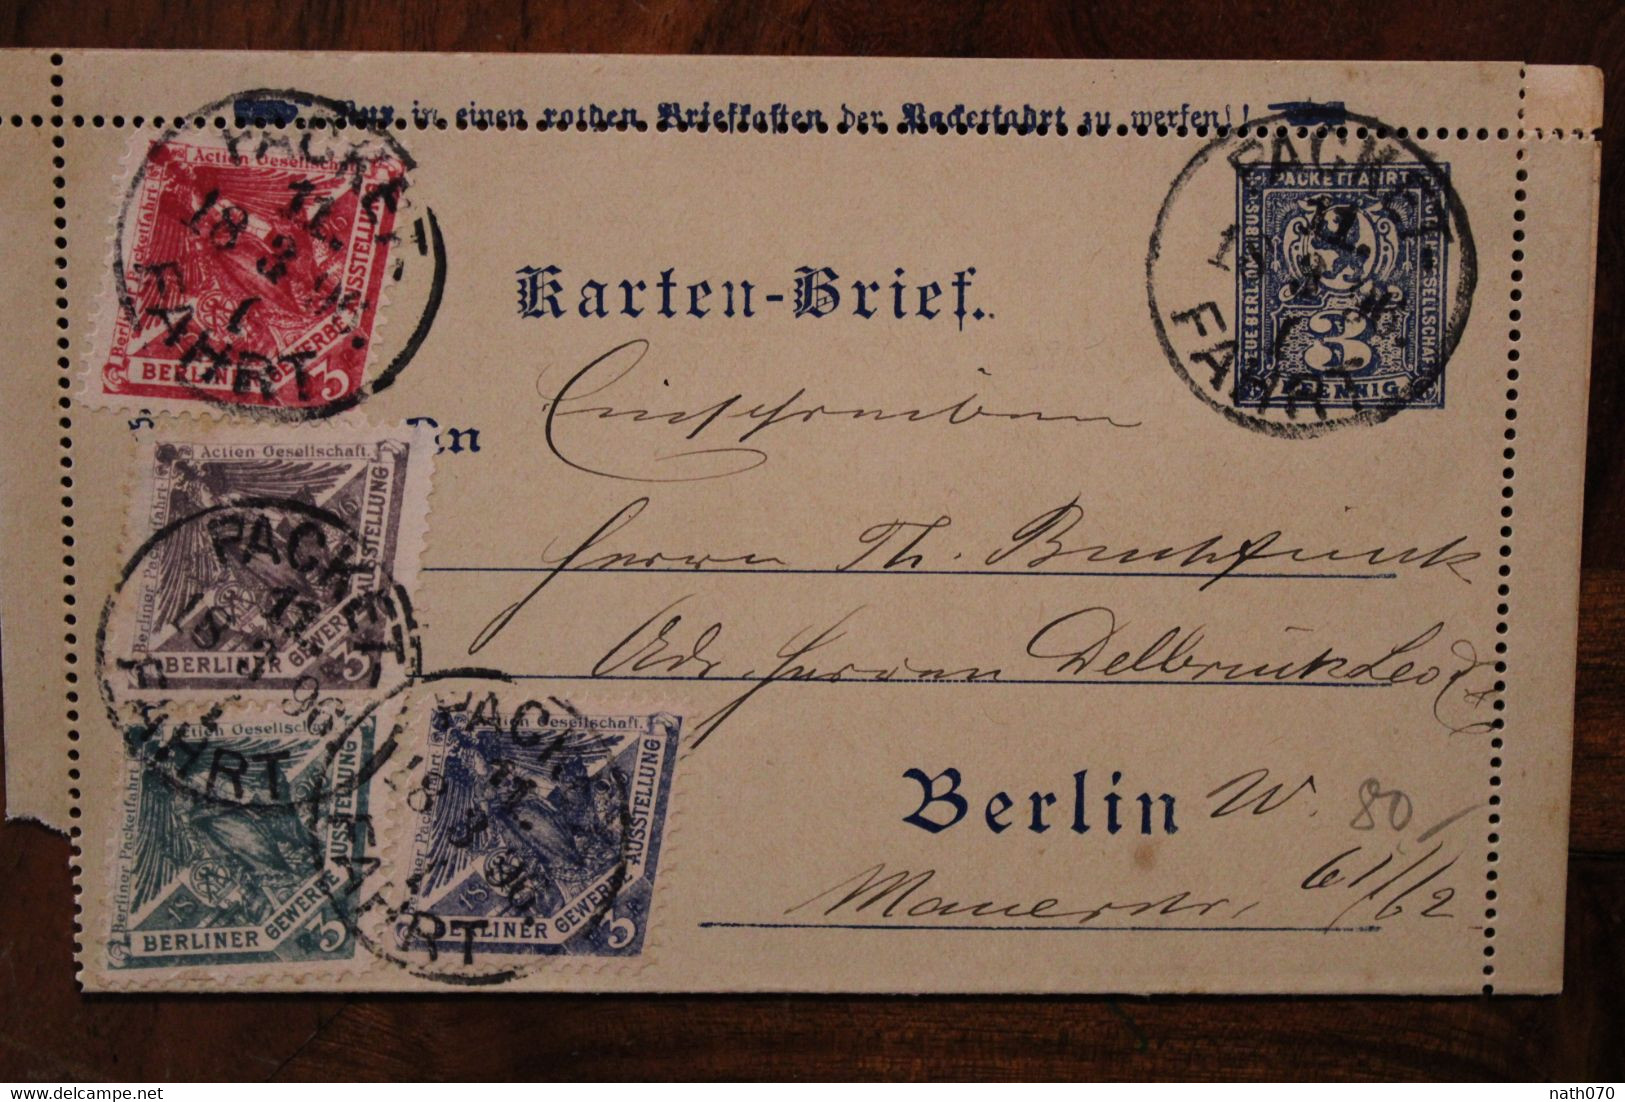 1895 Berliner Gewerbe Ausstellun Packetfahrt Gesellschaft Stadtbriefe Privatpost Briefverkehr Lettre Privée Cover - Correos Privados & Locales